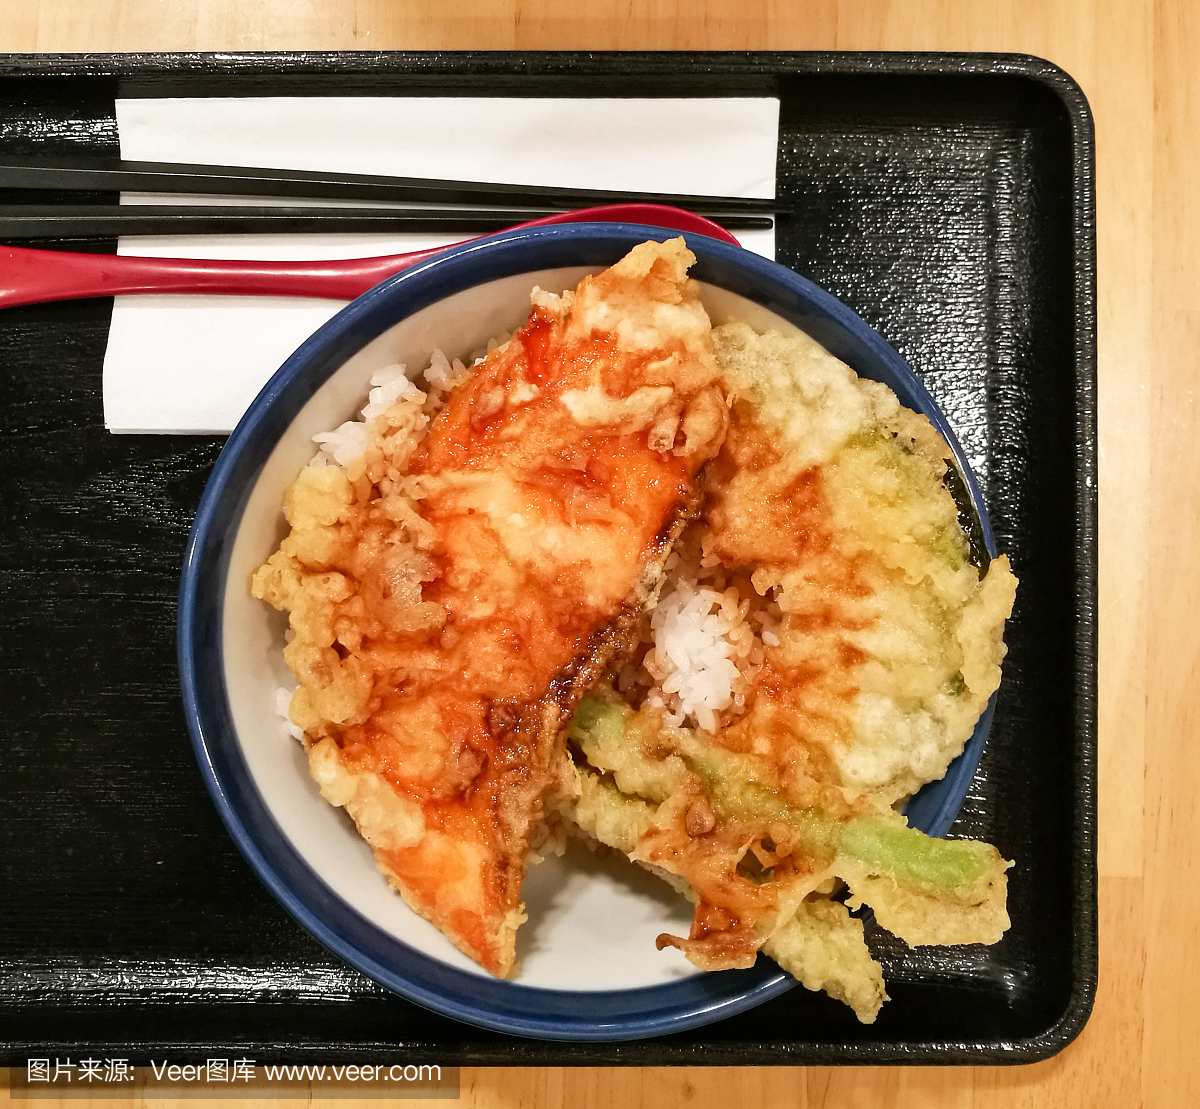 炸三文鱼,扁豆和切片南瓜腱日本料理